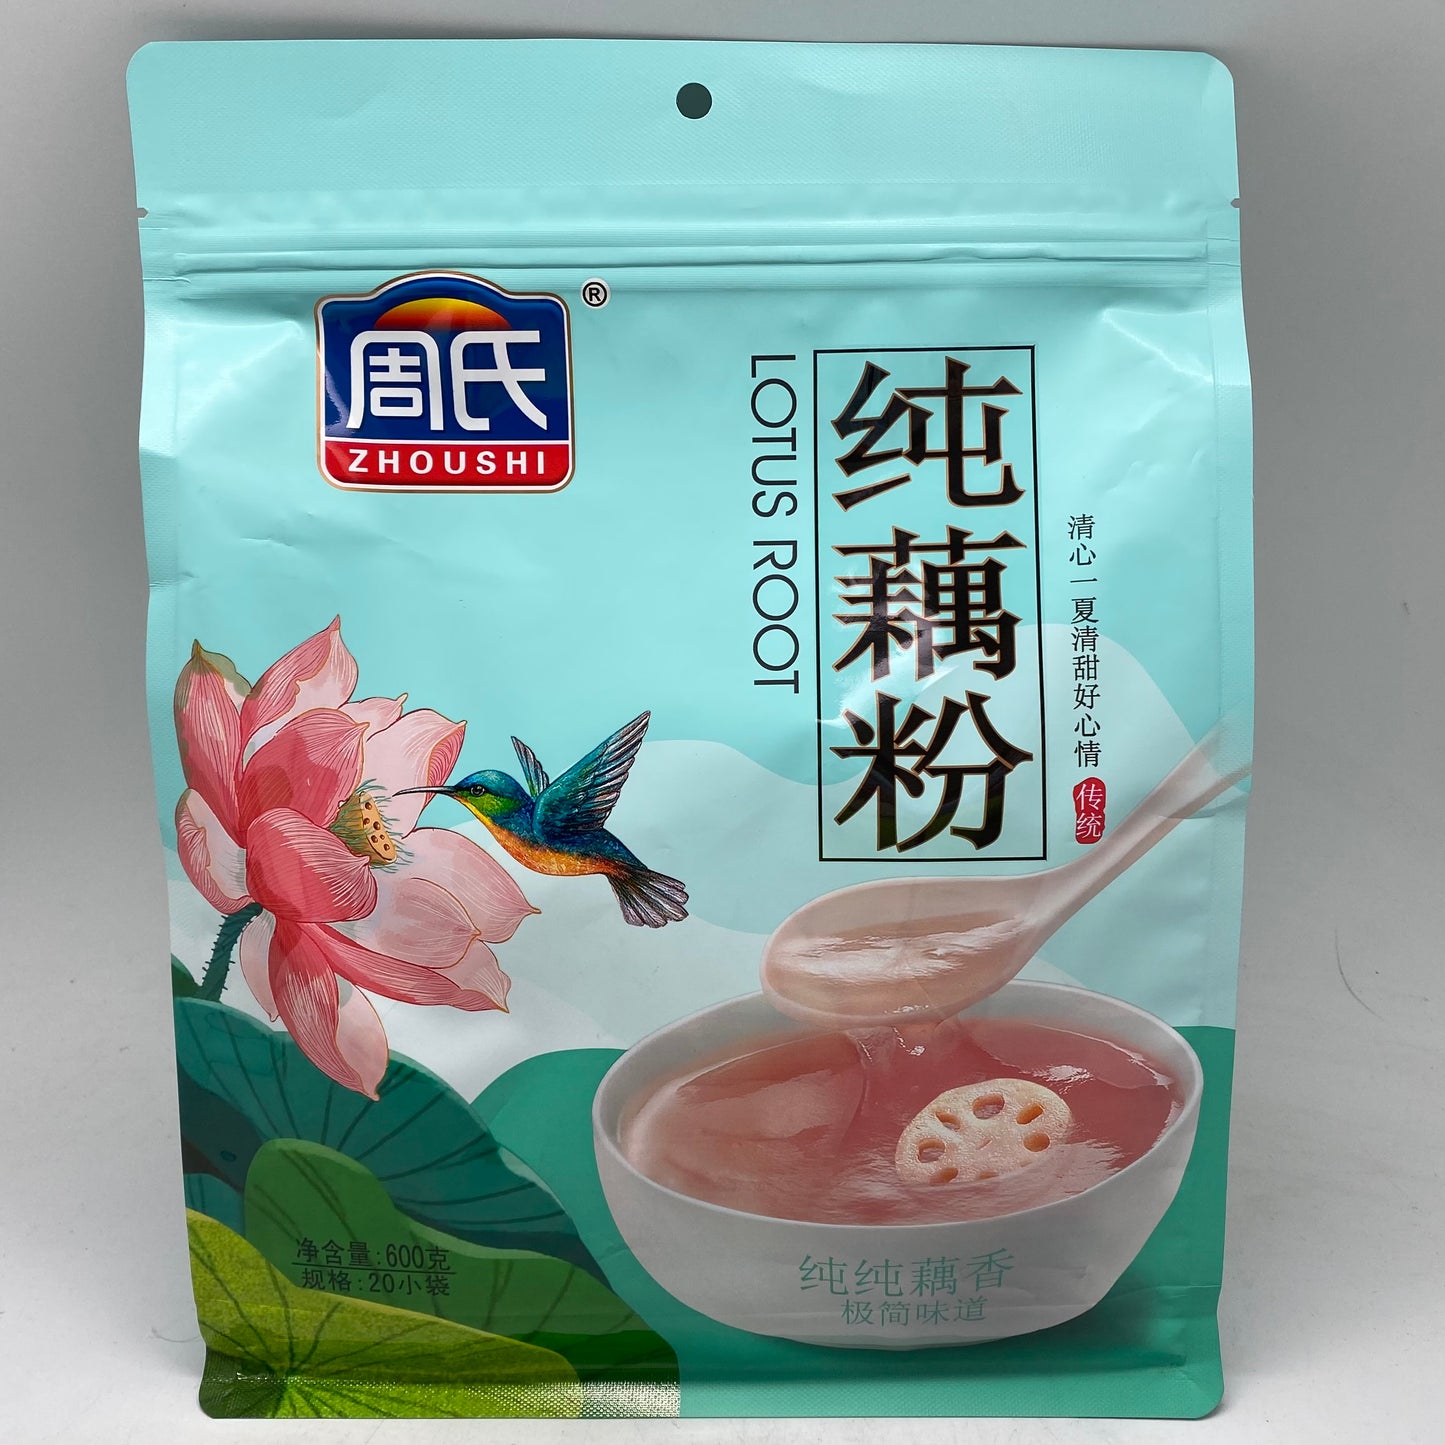 I023L ZhouShi Brand - Original: Lotus Seed Powder Beverage 600g - 16 bags / 1 CTN